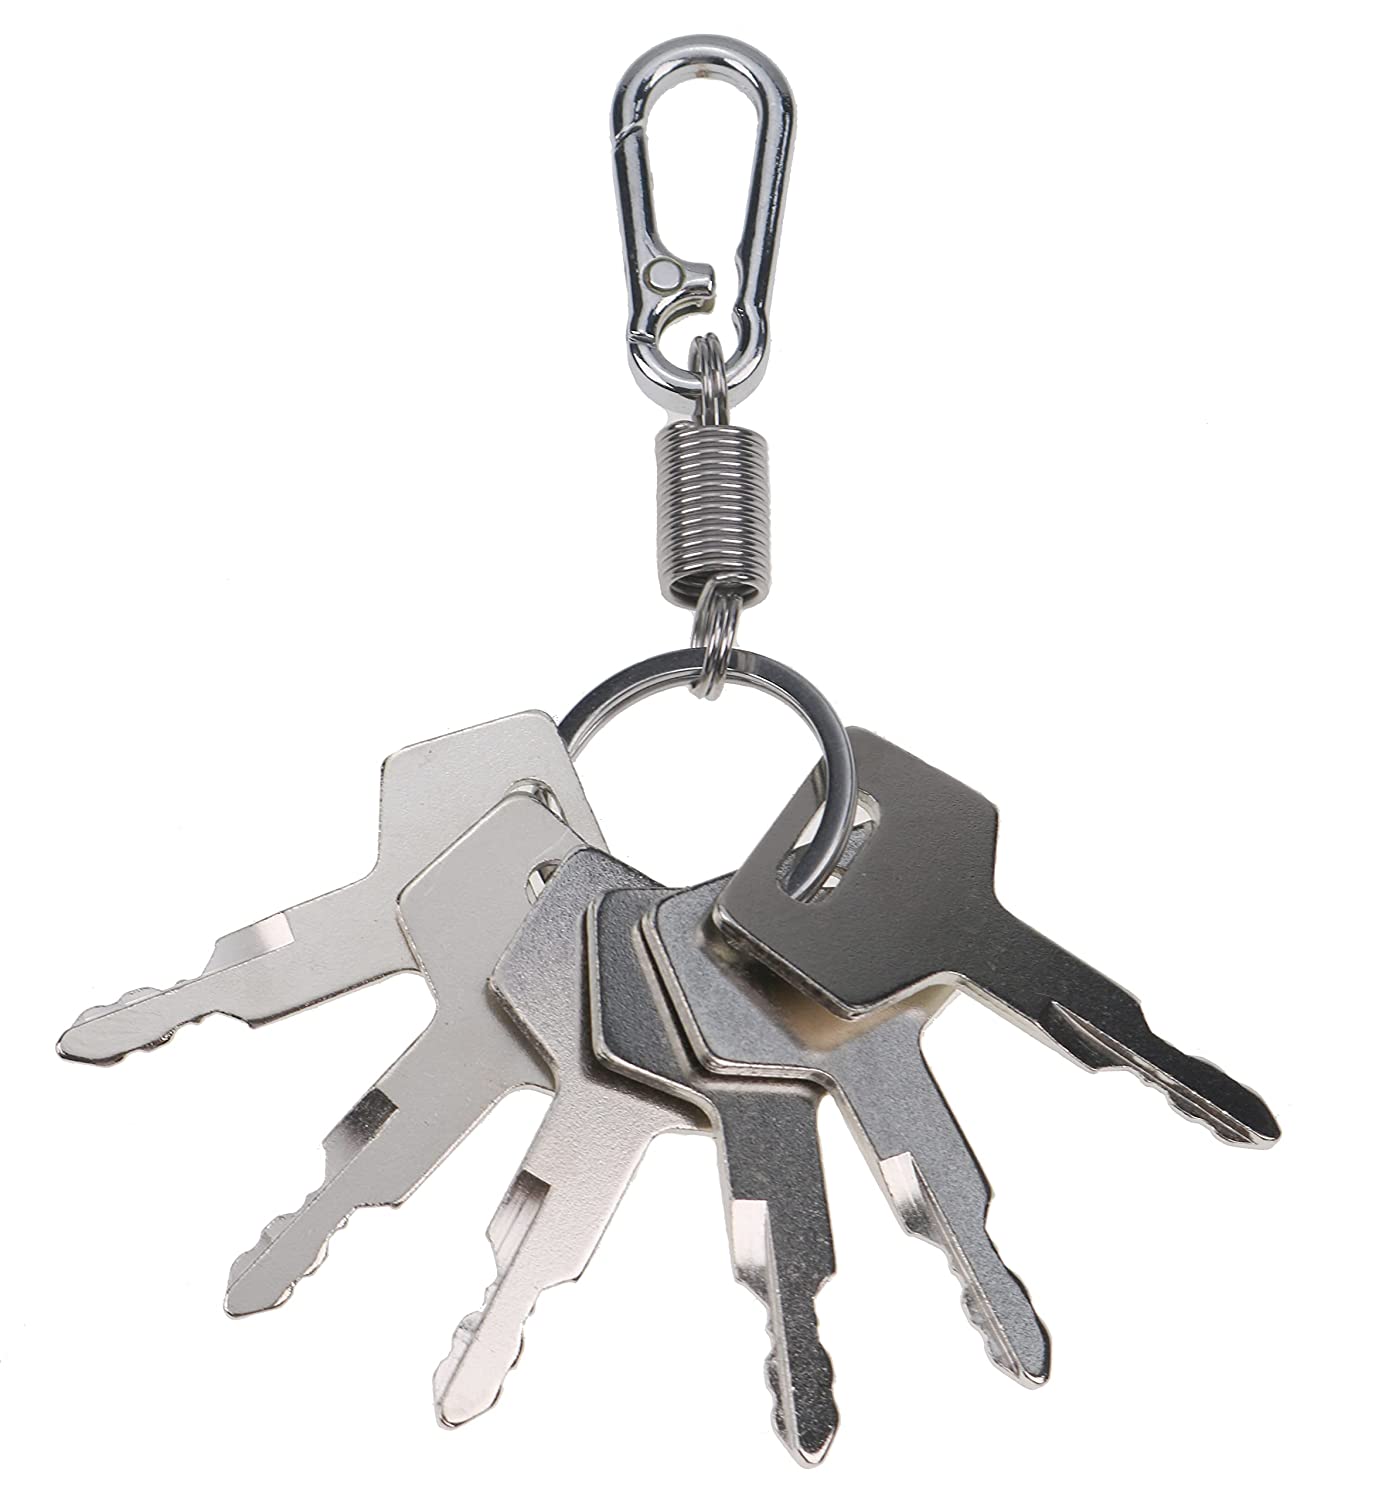 Keys Ignition Keys H806 180845 17001-00019 for Takeuchi Hitachi Gehl Mustang Case New Holland Excavator & Track Loader - KUDUPARTS